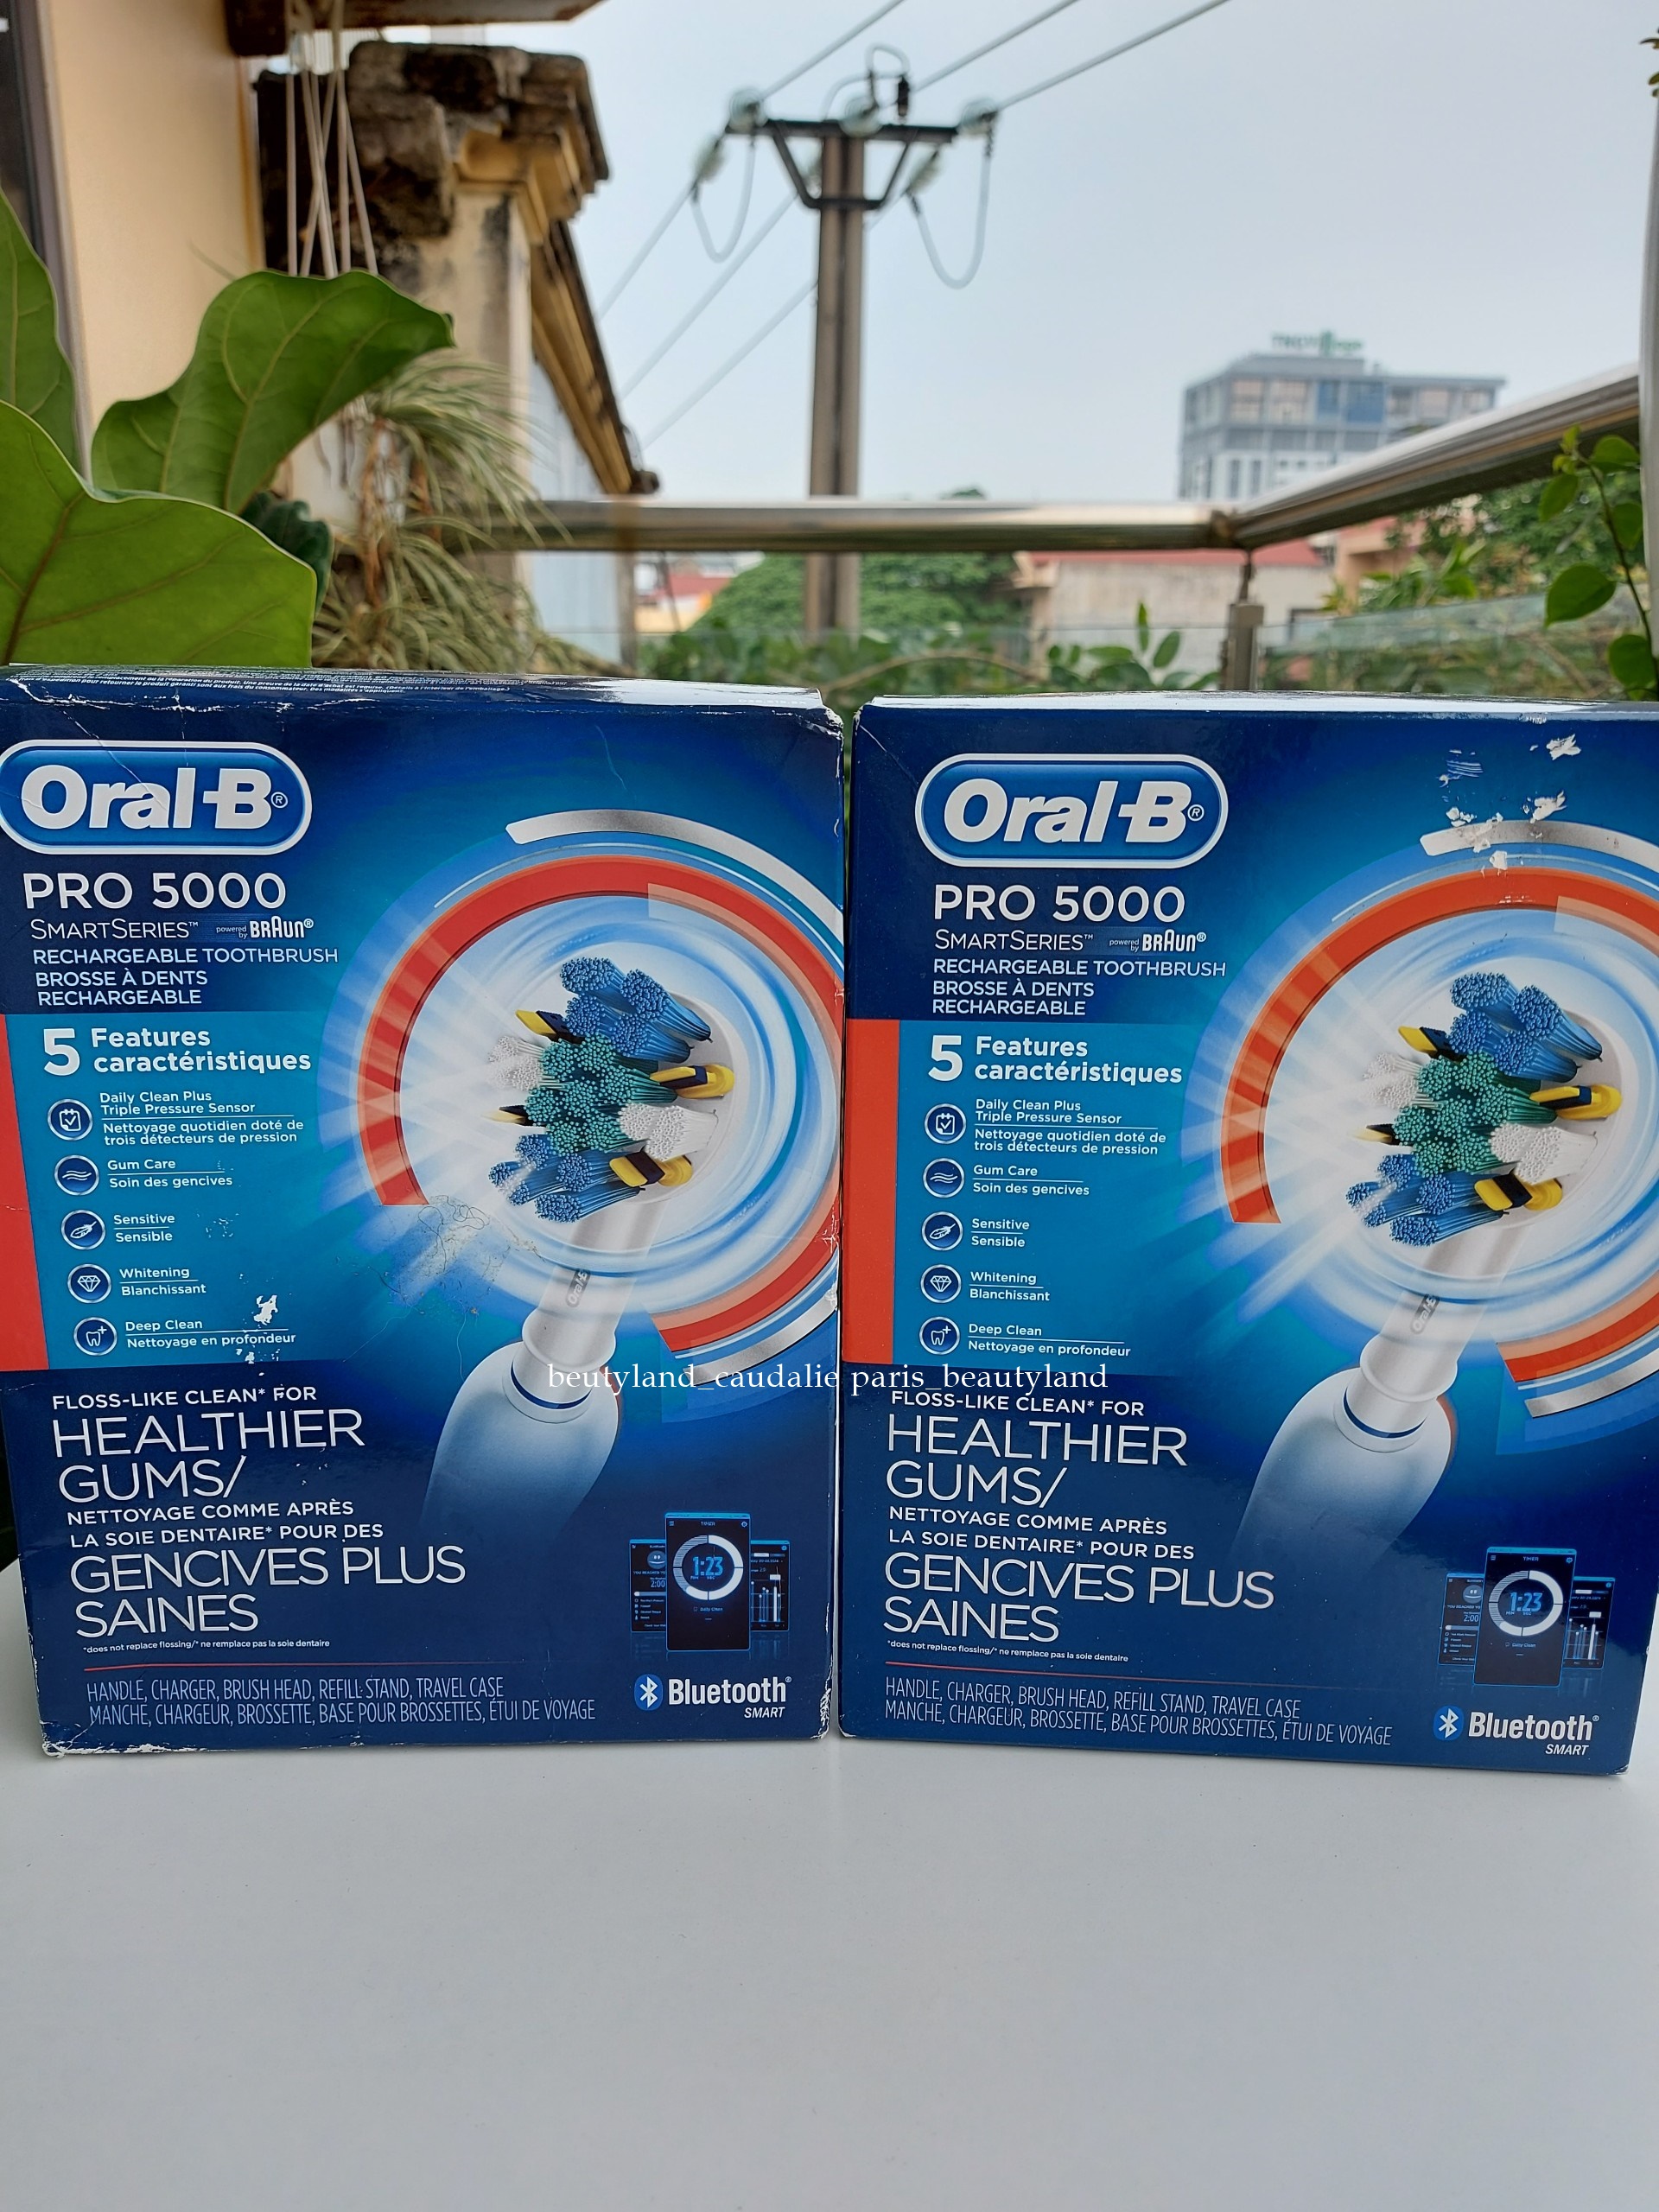 [Lỗi 1 đổi 1 trong 7 ngày ] Bàn chải đánh răng điện Oral-B pro 5000  kết nối bluetooth